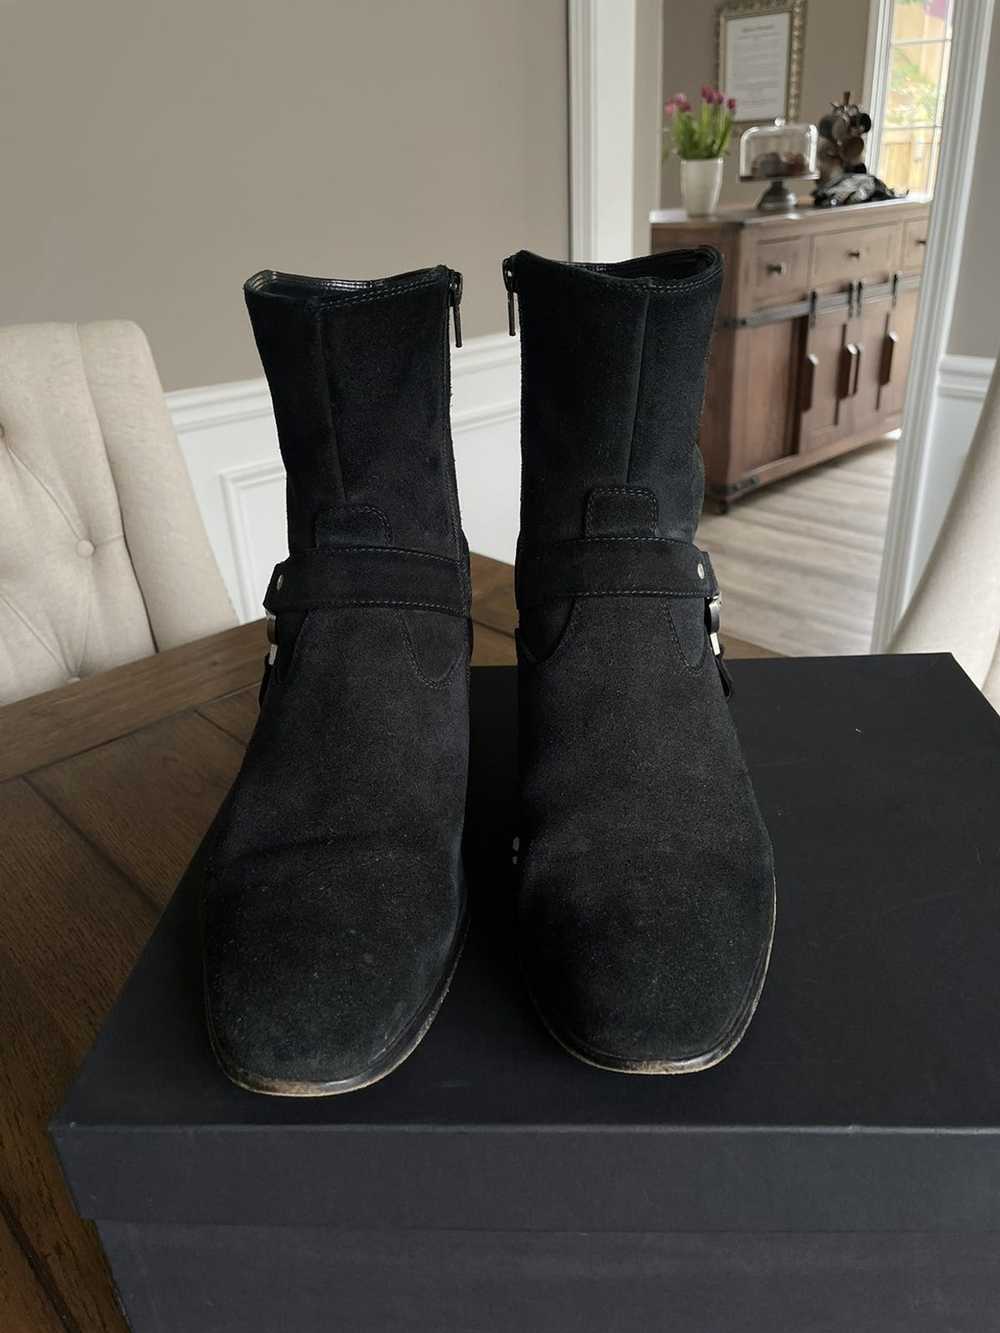 Versus Versace Versus Versace boot (Leather sole) - image 5